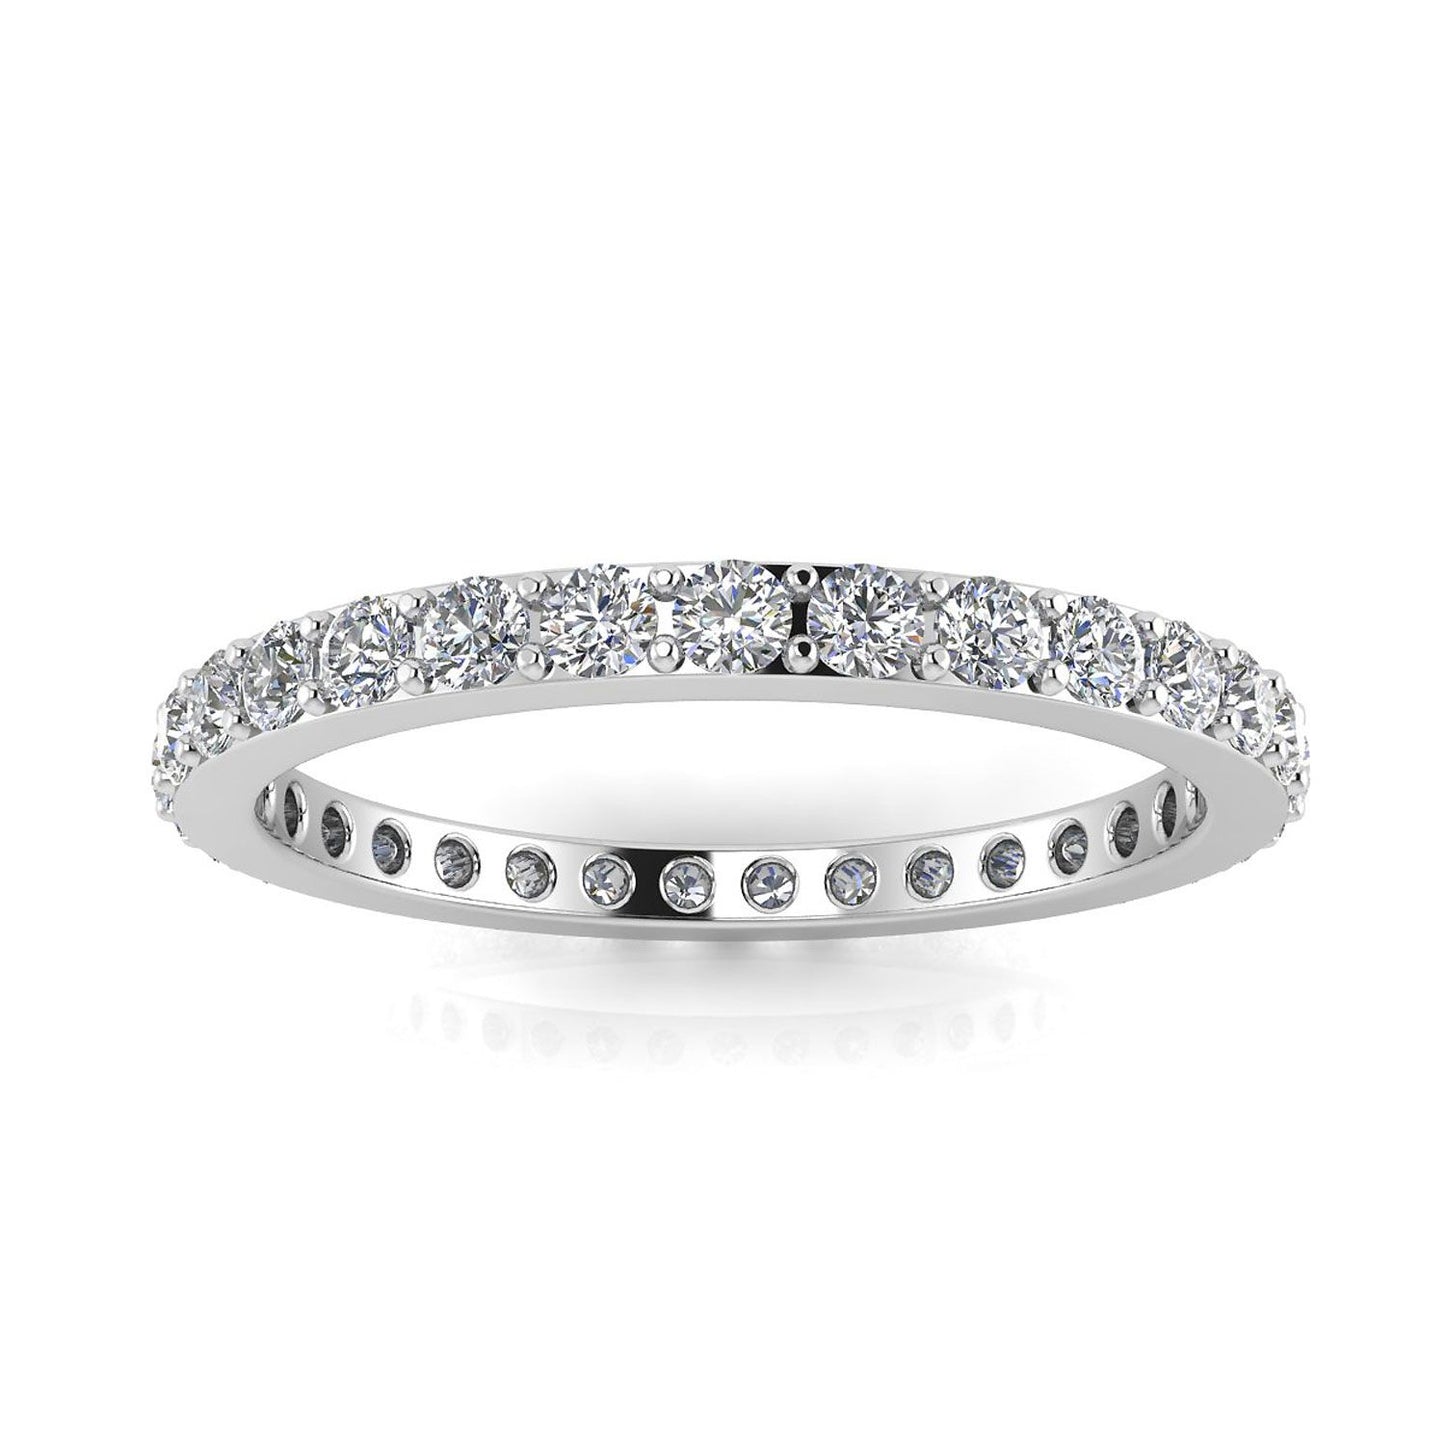 แหวนหมั้นเพชรเจียระไนทรงกลมทรงกลม Eternity Ring ทองคำขาว 14k (1.31 กะรัต) ขนาดแหวน 4